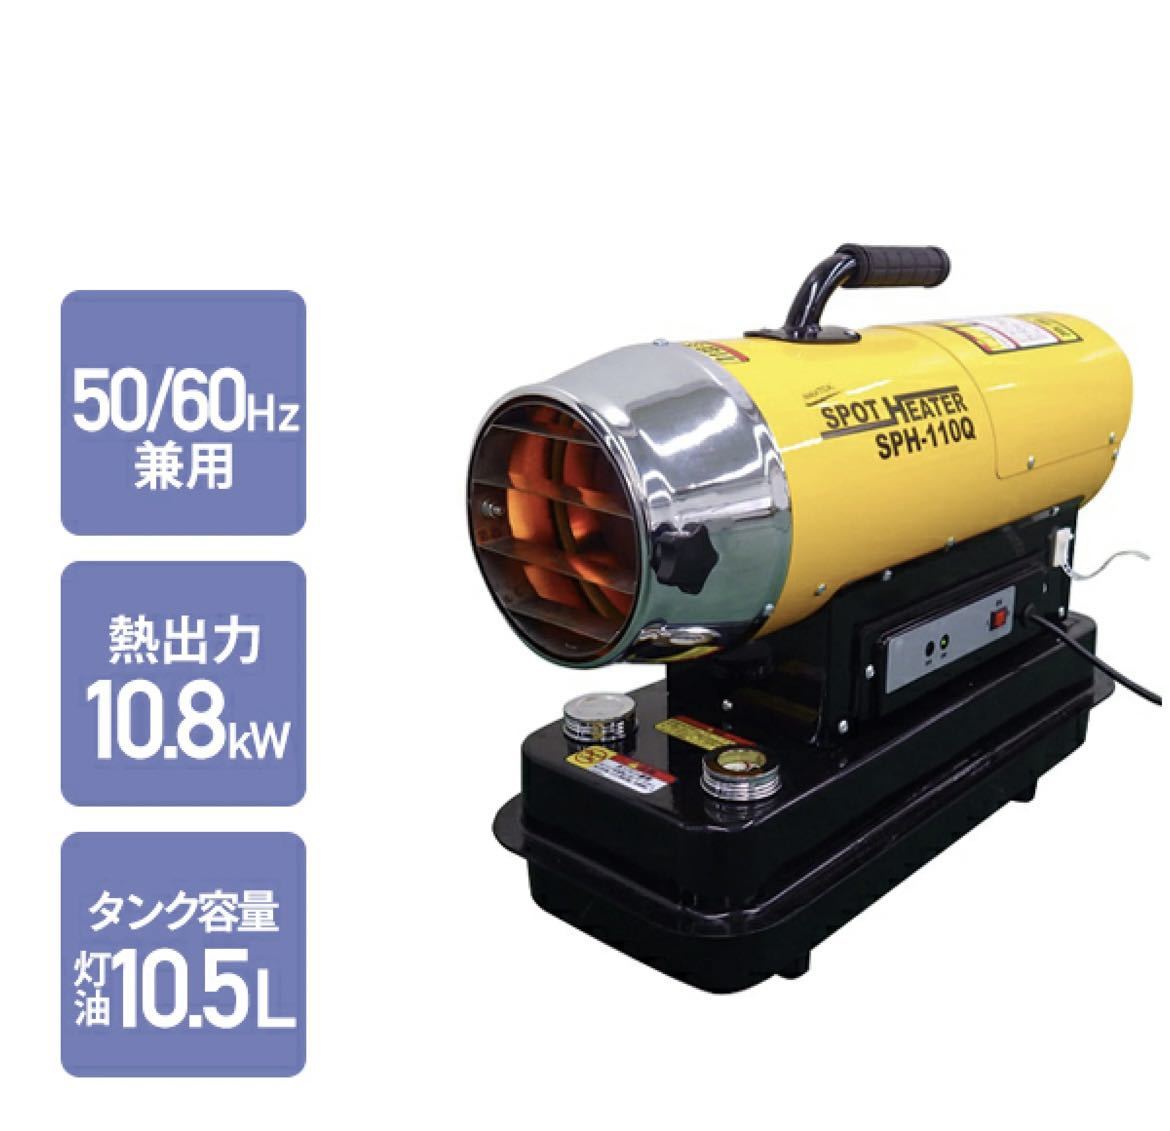 【未開封】ナカトミ NAKATOMI スポットヒーター 50/60Hz兼用 ヘルツフリー 熱出力 10.8kW タンク容量灯油10.5L 西日本 東日本 SPH-110Q